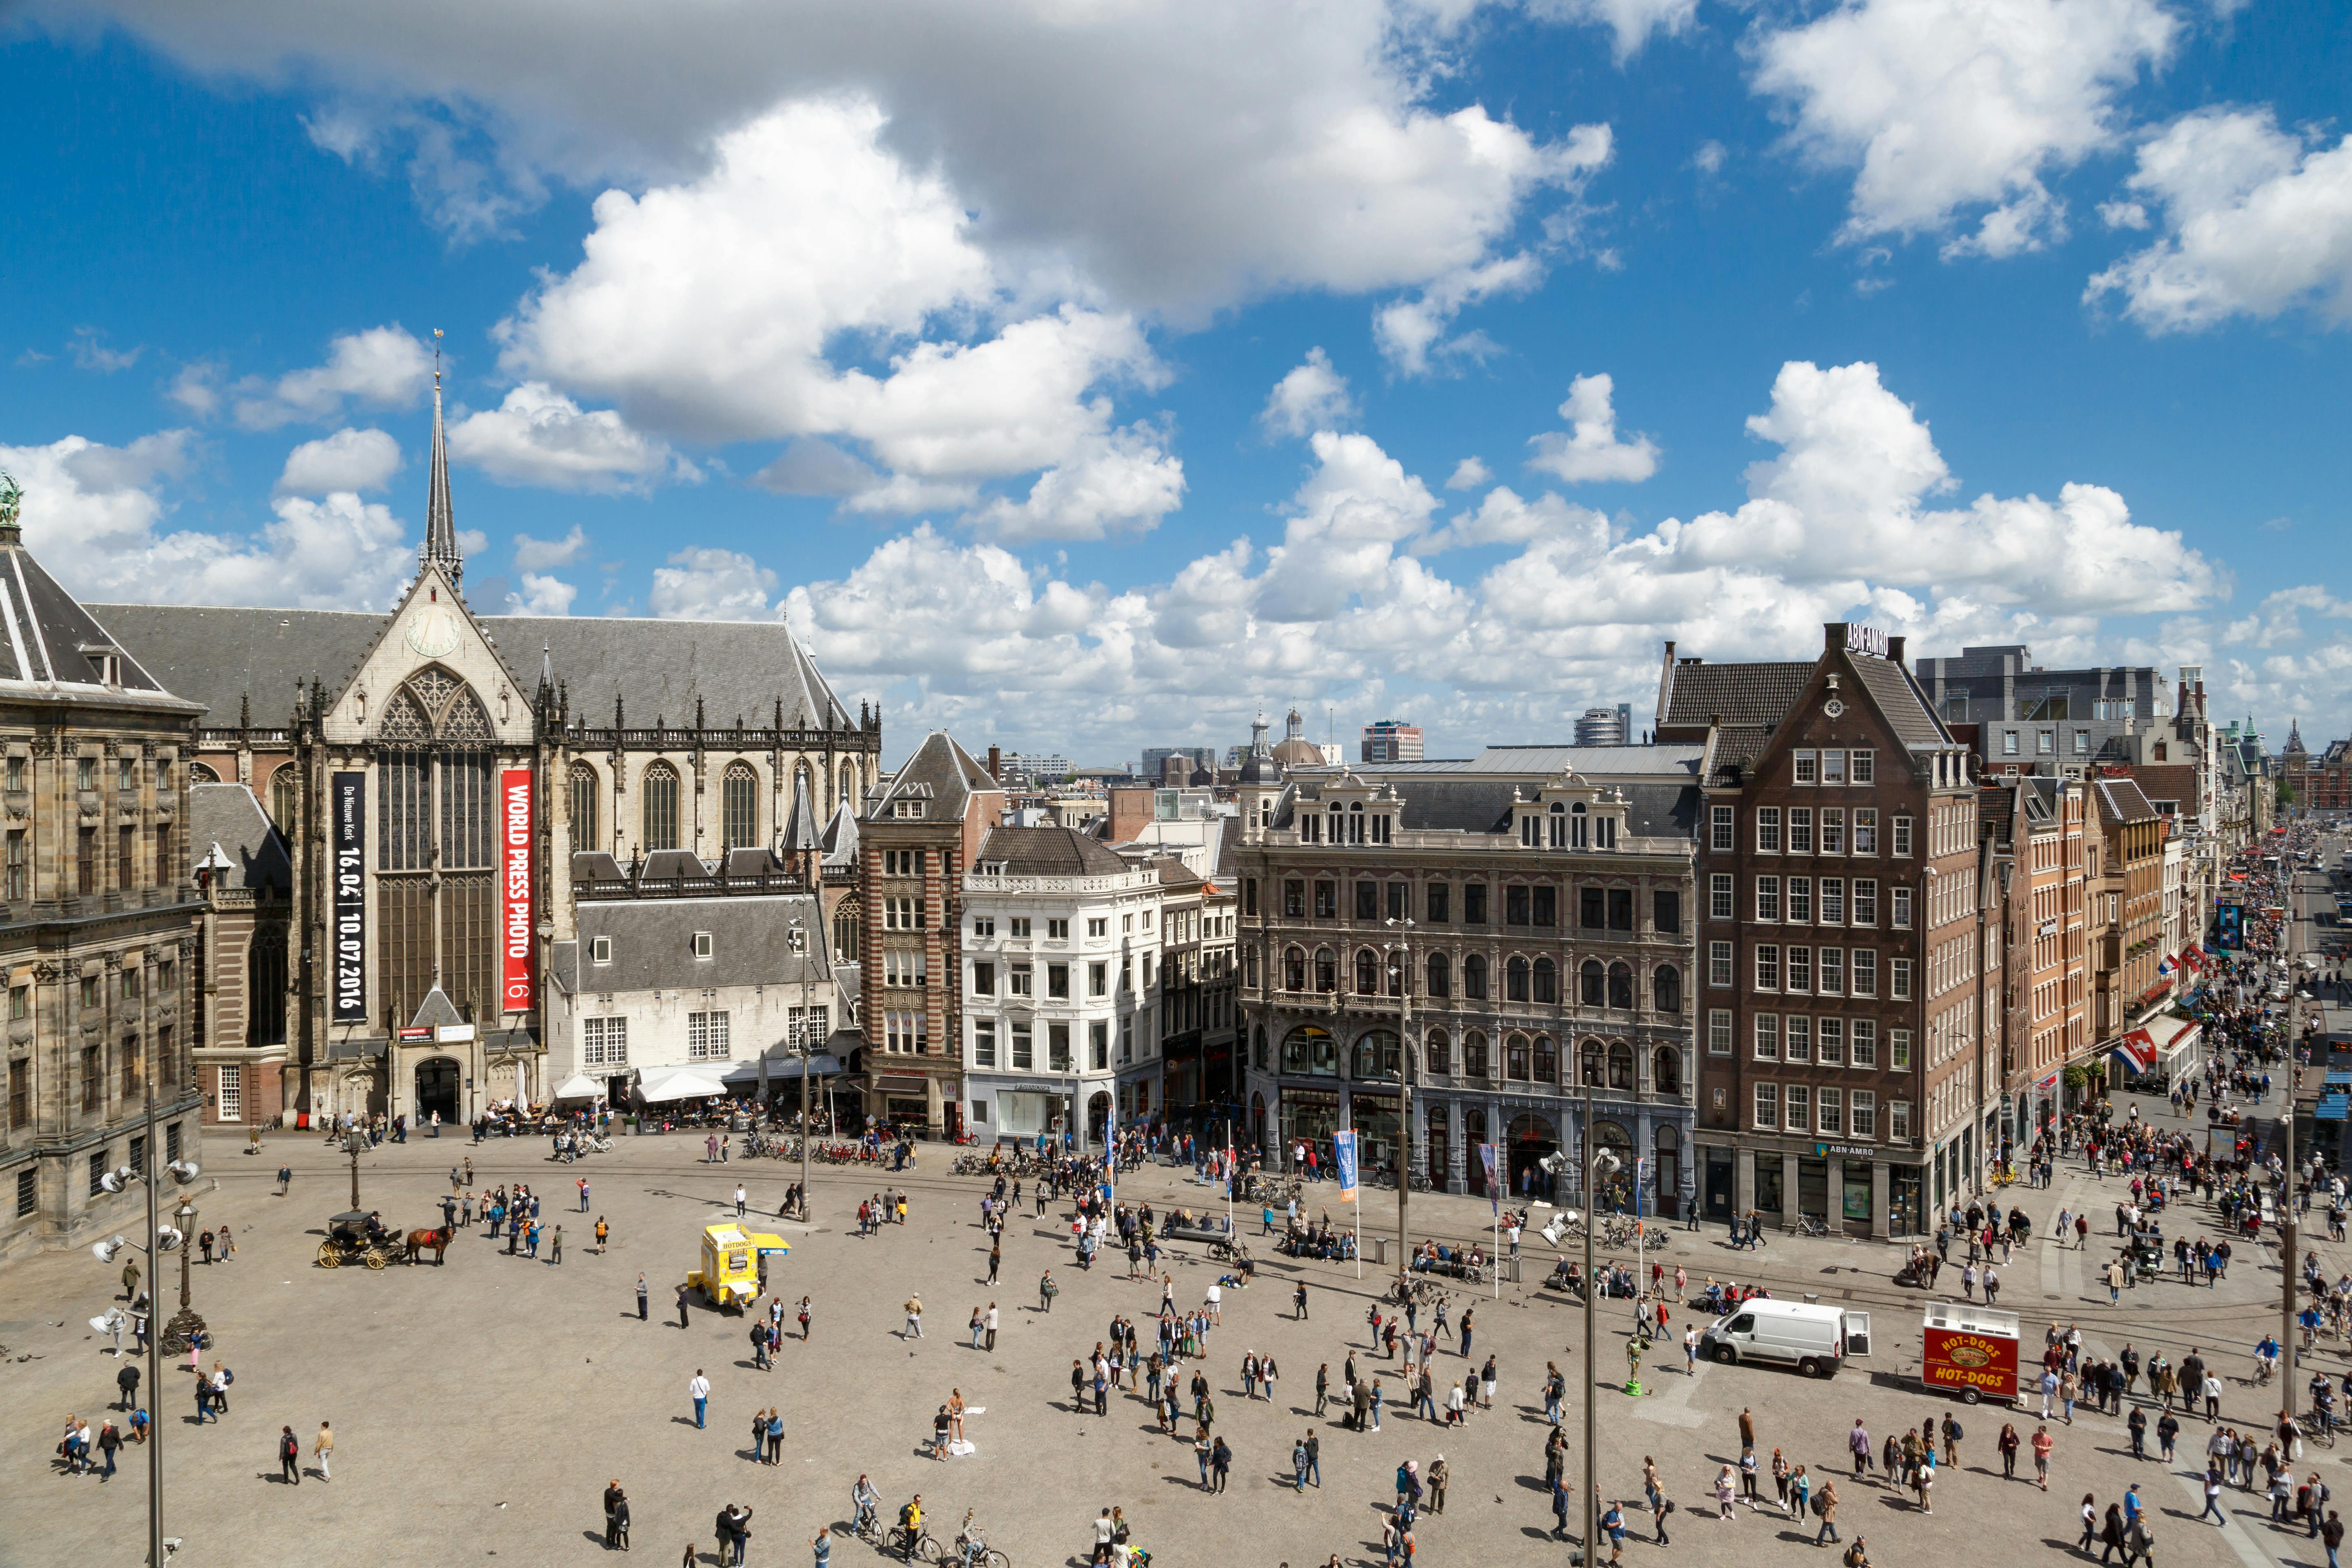 Fietsverhuur voor 24 uur in Amsterdam met stadskaart 